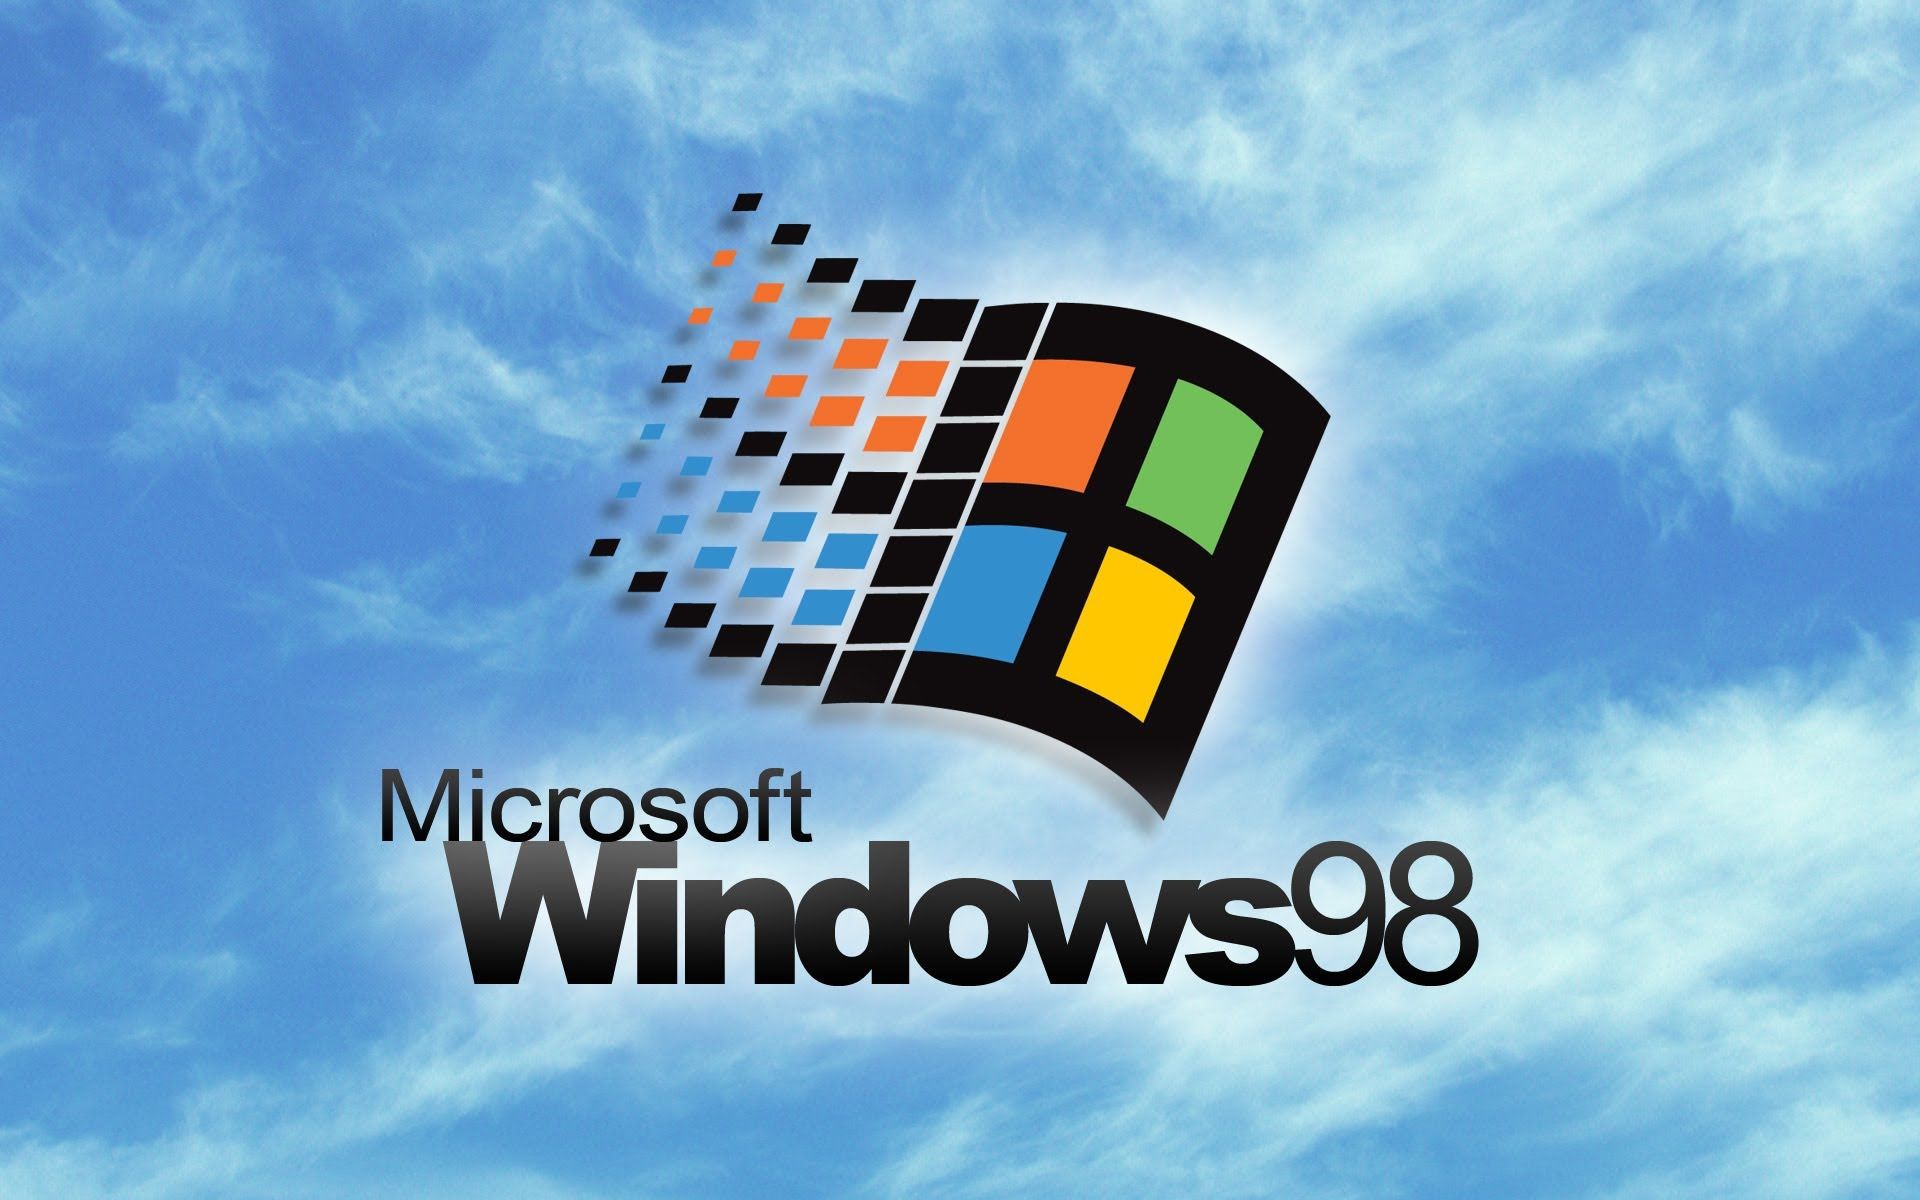 Khám phá những hình nền Windows 98 cổ điển độc đáo nhất trên WallpaperDog! Hương vị hoài niệm sẽ tràn ngập màn hình của bạn. Làm mới máy tính của bạn với những hình nền dễ thương và cổ điển từ thời đại Windows 98!